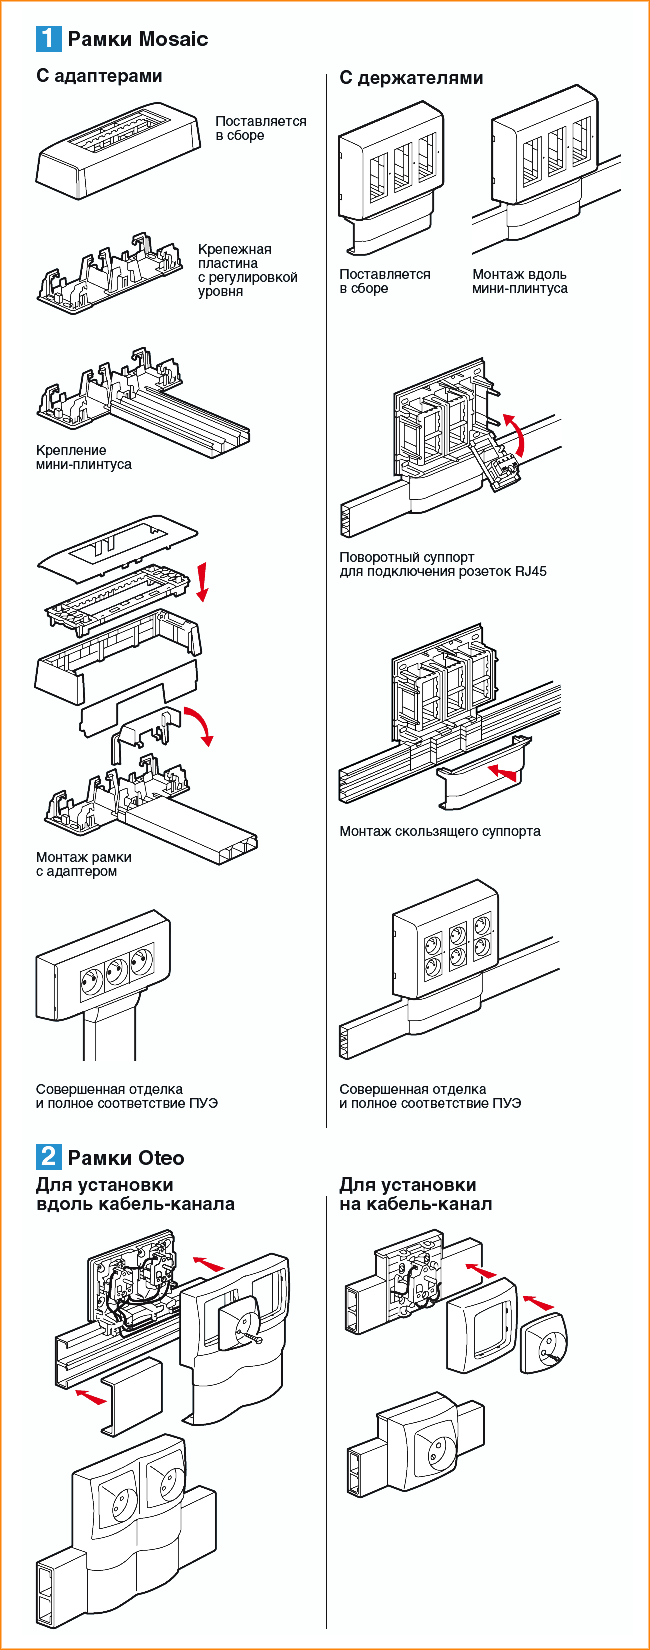 Схемы монтажа рамок для электроустановочного оборудования к мини-плинтусам (кабель-каналам) DLPlus Legrand